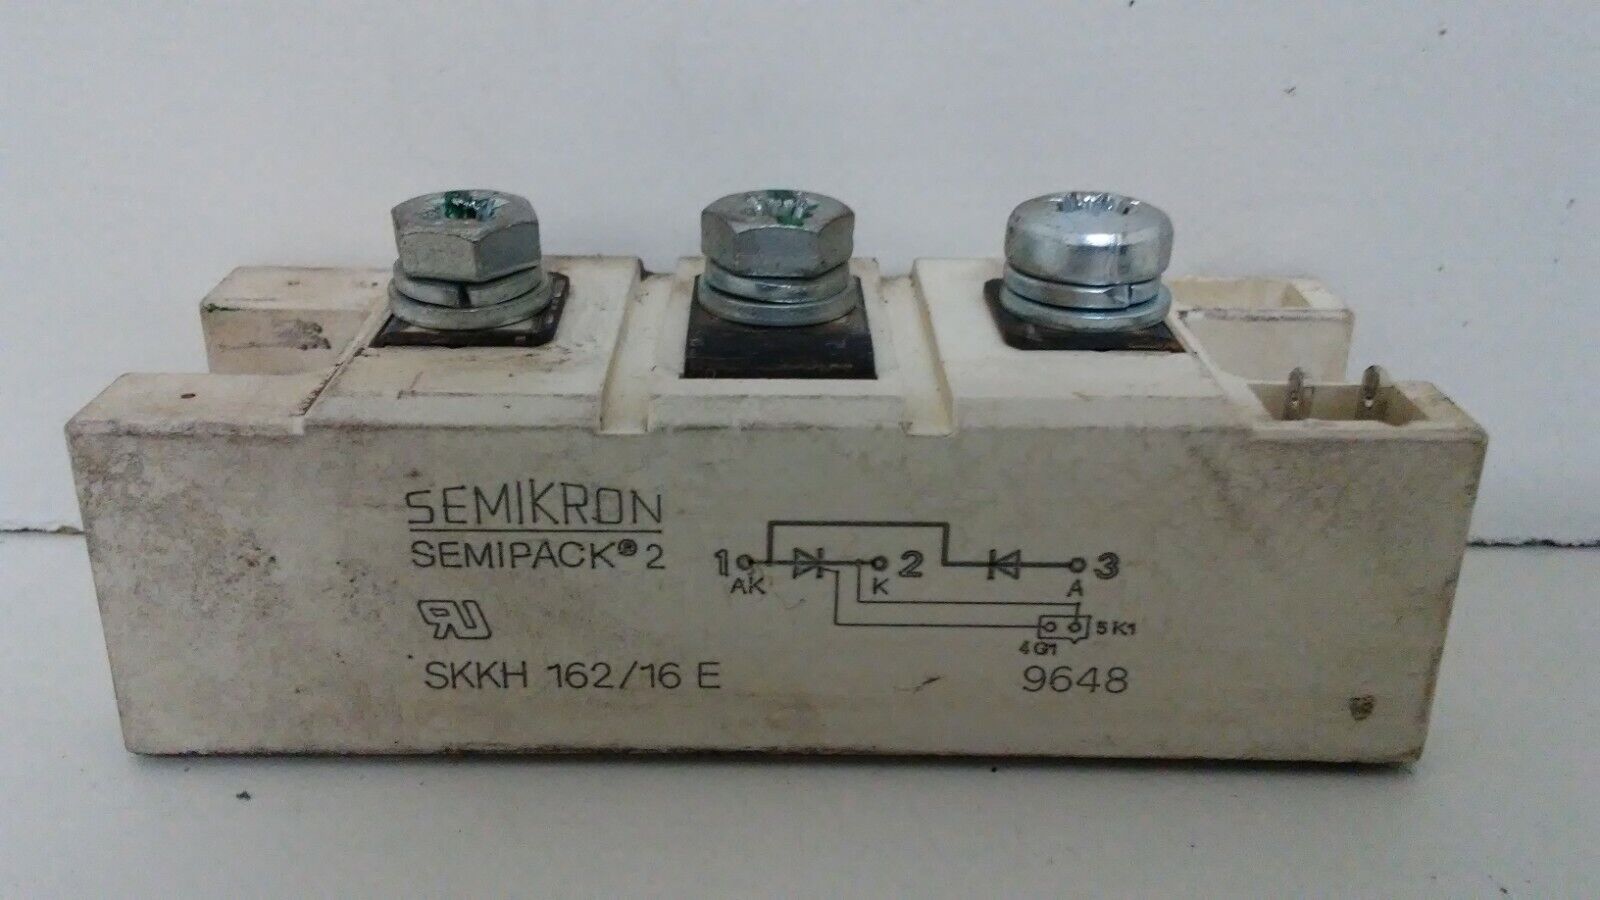 GUARANTEED SEMIKRON SEMIPACK 2 THYRISTOR MODULE SKKH-162/16E